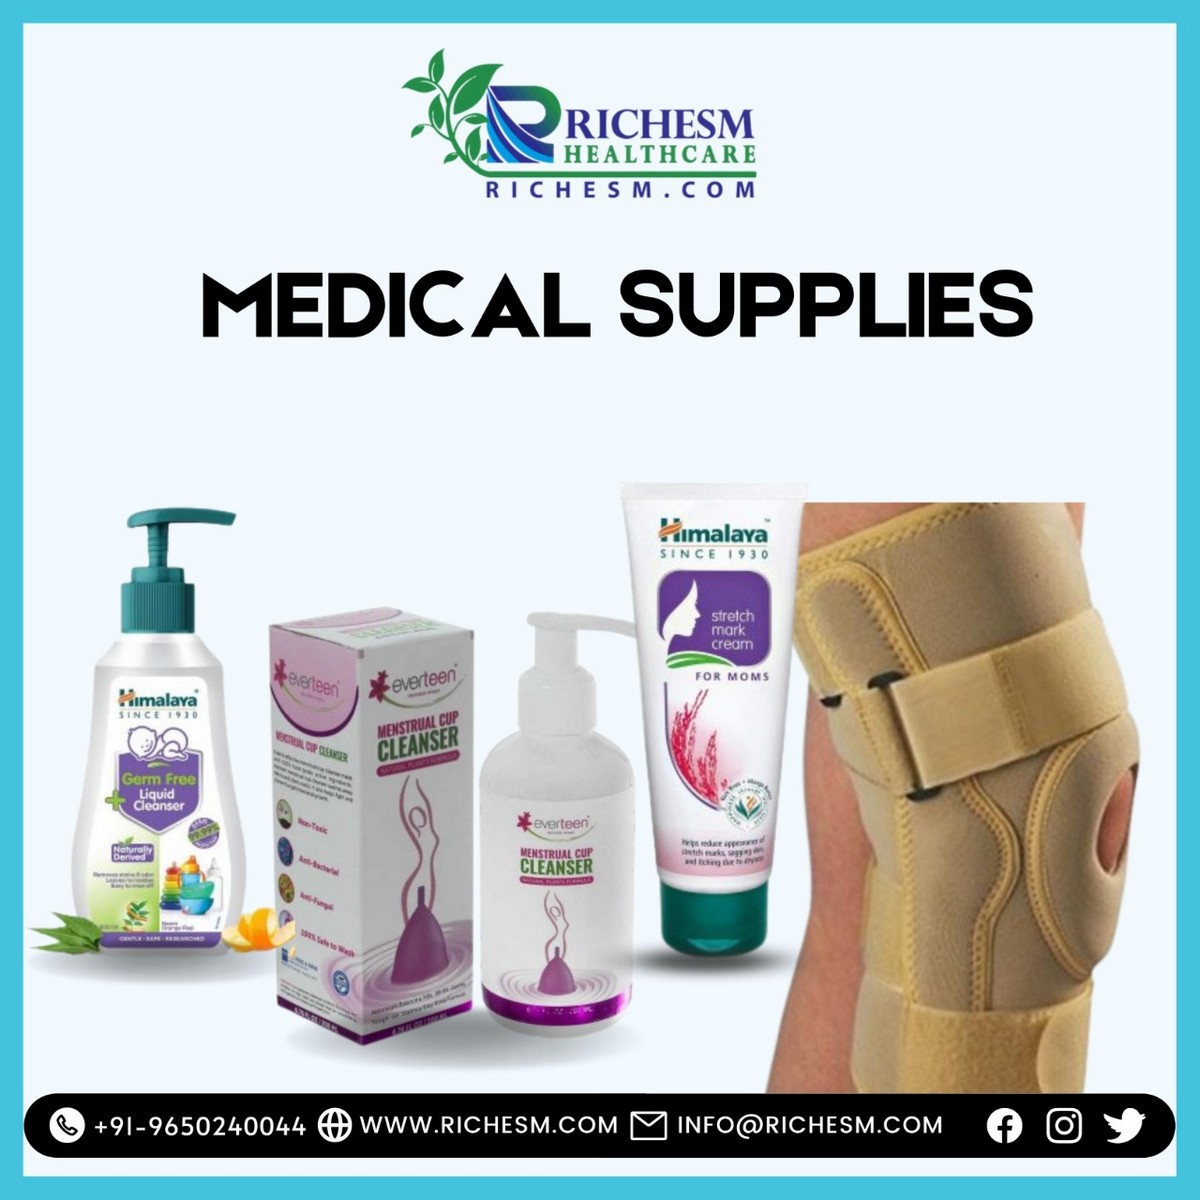 Riches Medical Supplies